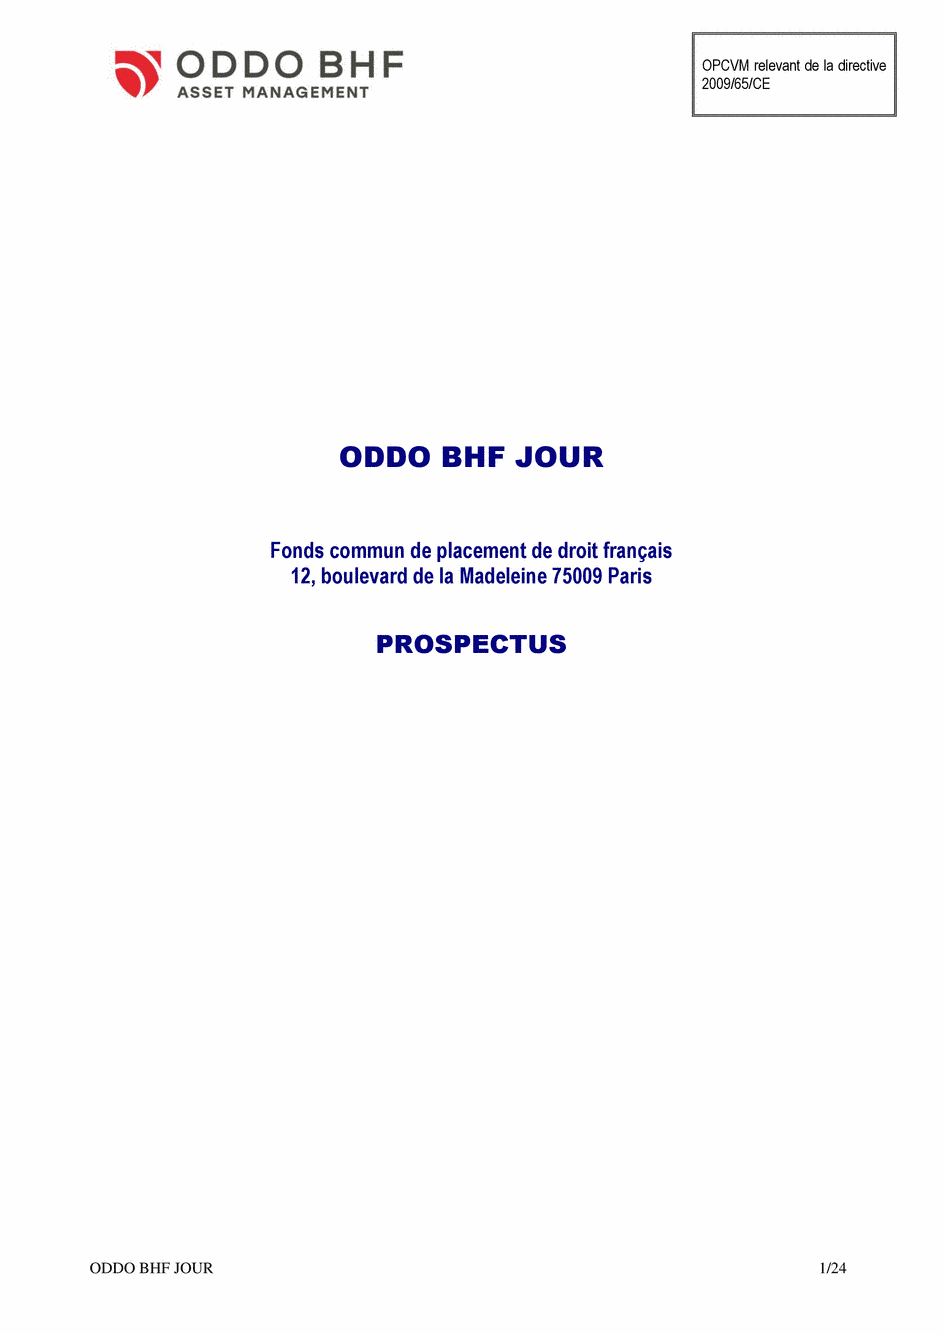 Prospectus ODDO BHF JOUR CI-EUR - 22/01/2020 - Français